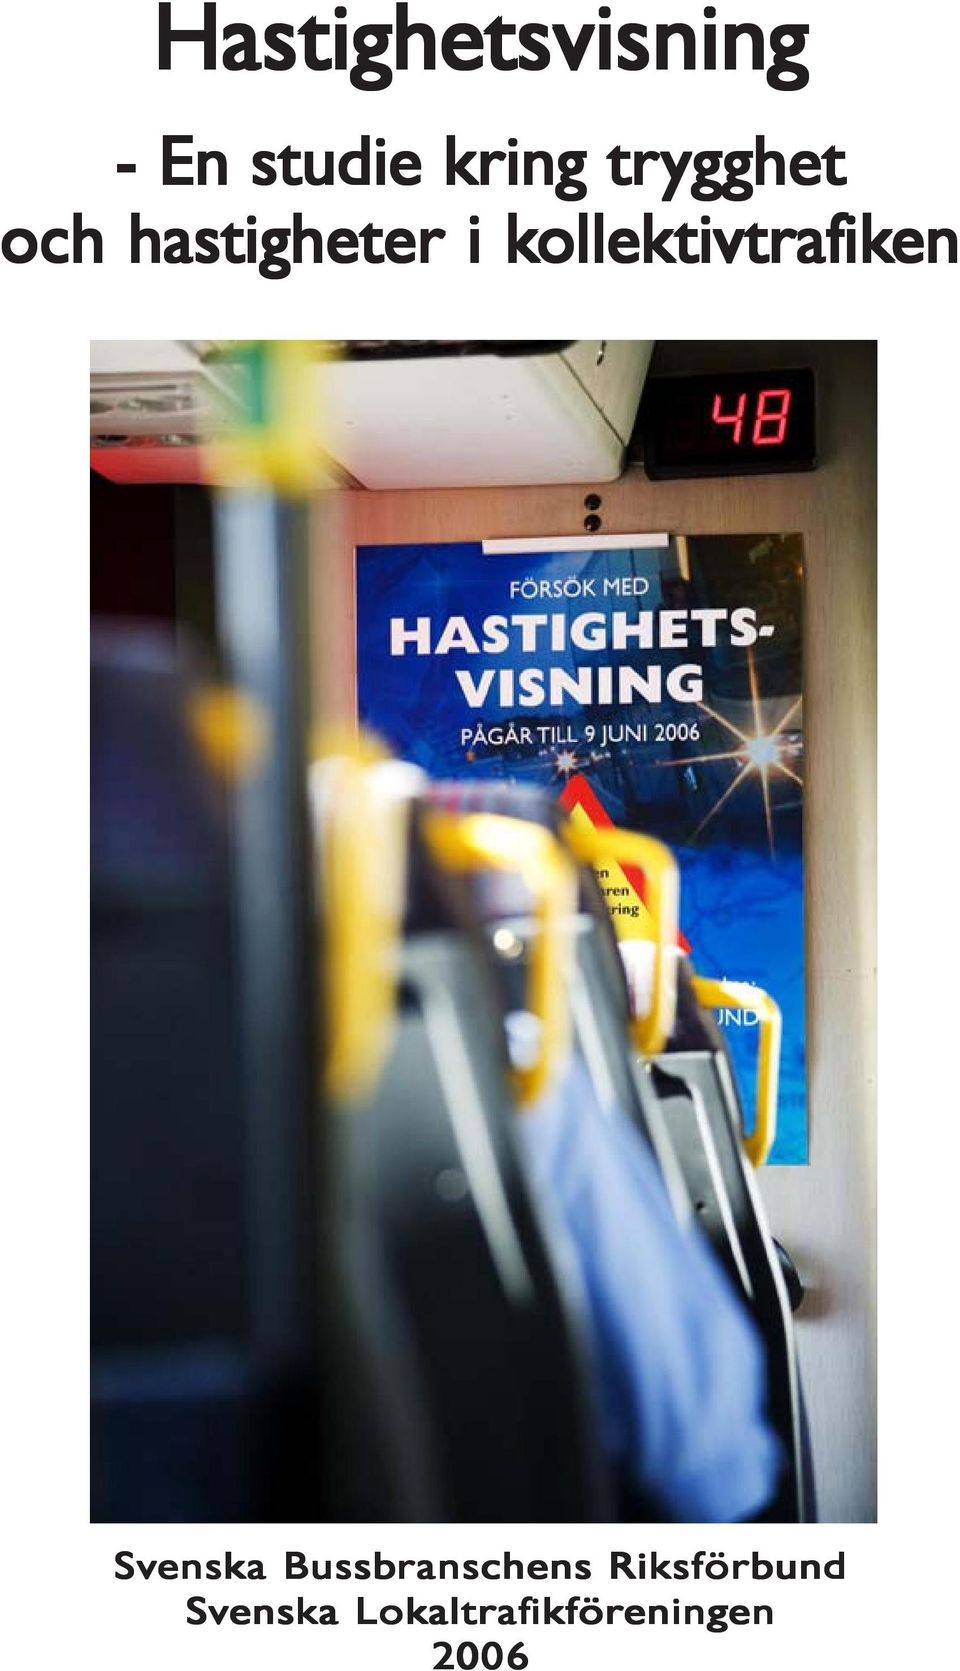 ollektivtrafik iken Svenska Bussbranschens